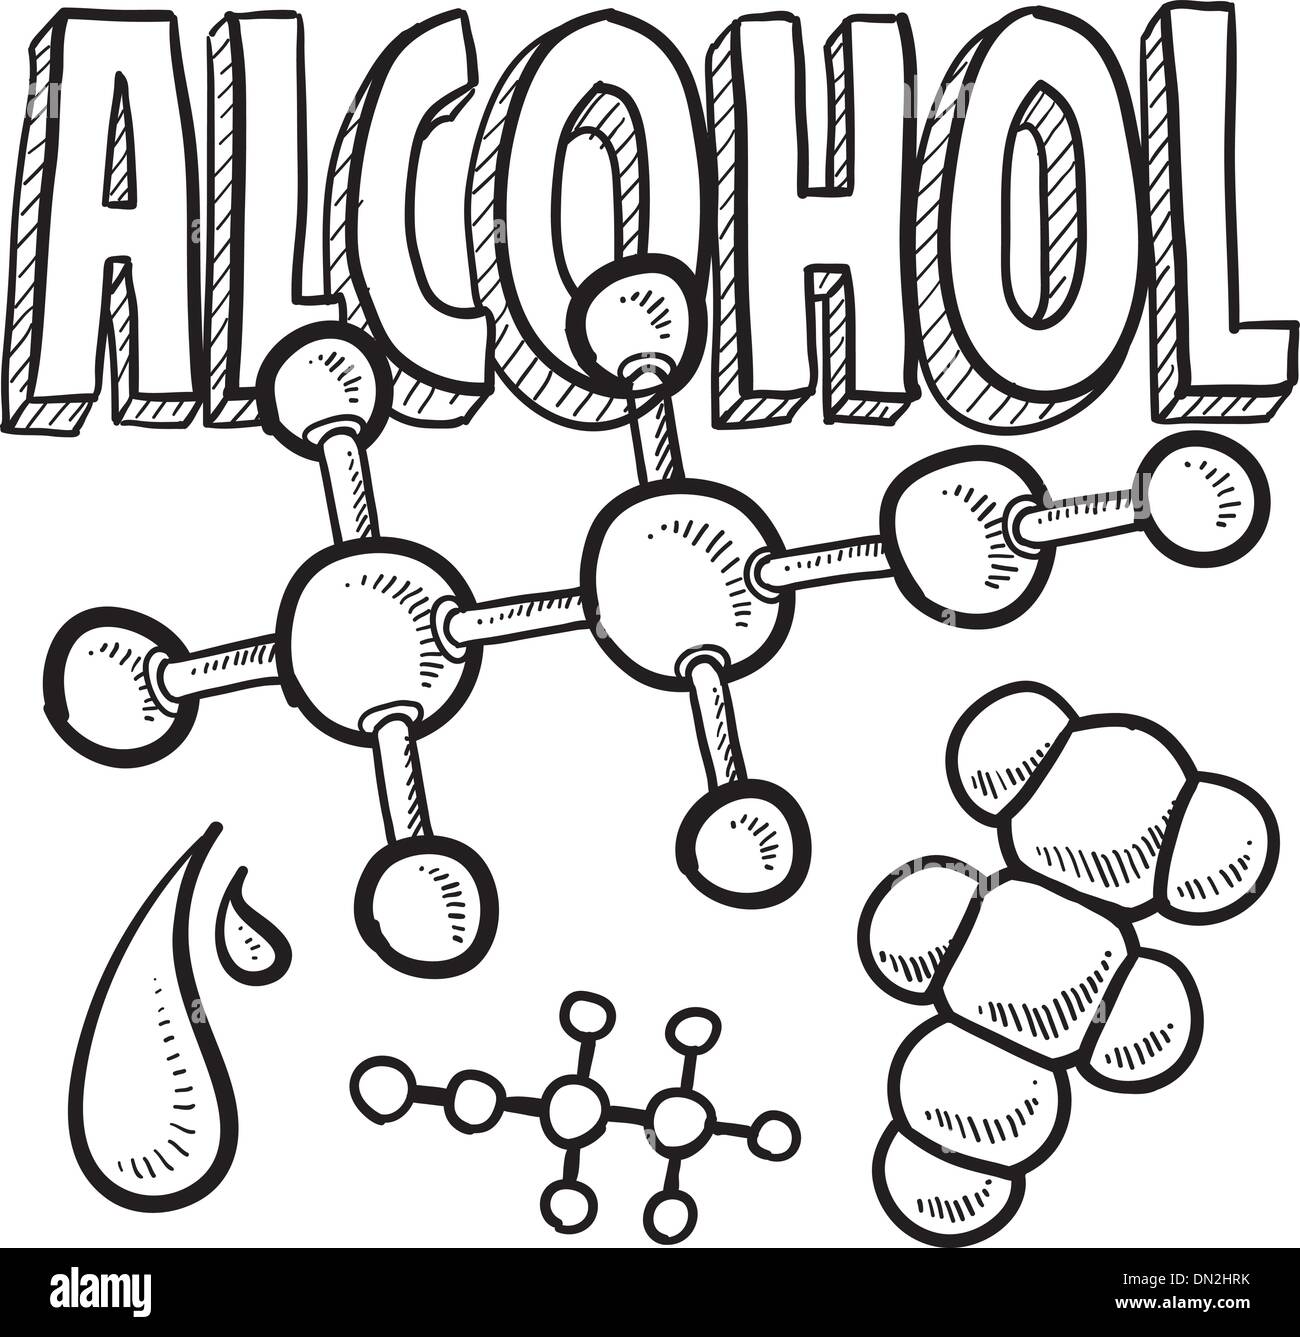 Molecola di alcool illustrazione della scienza Illustrazione Vettoriale